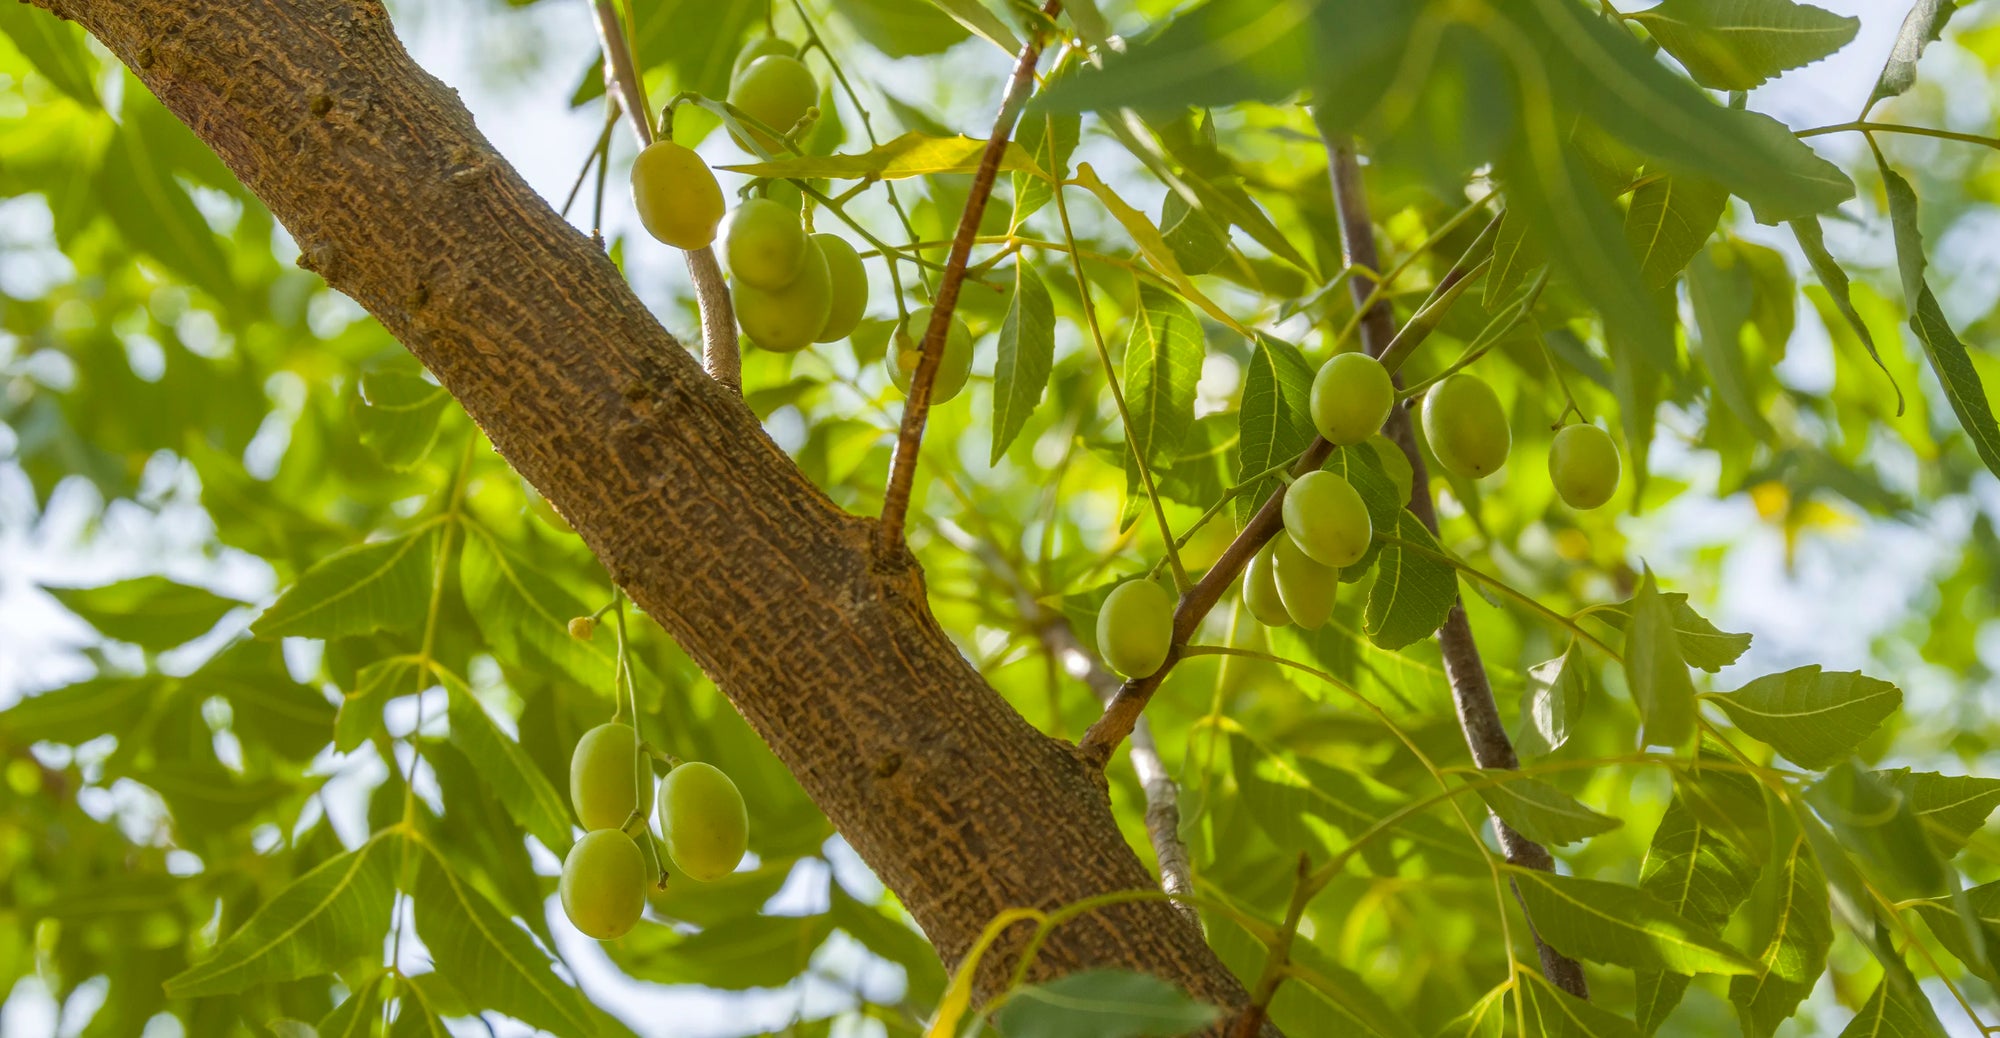 Man sieht eine Nahaufnahme des Neem-Baums. Die Sonne schient durch die Blätter. Man kann auch dei grünen, oliv-förmigen Früchte erkennen, die an den Asten hängen.